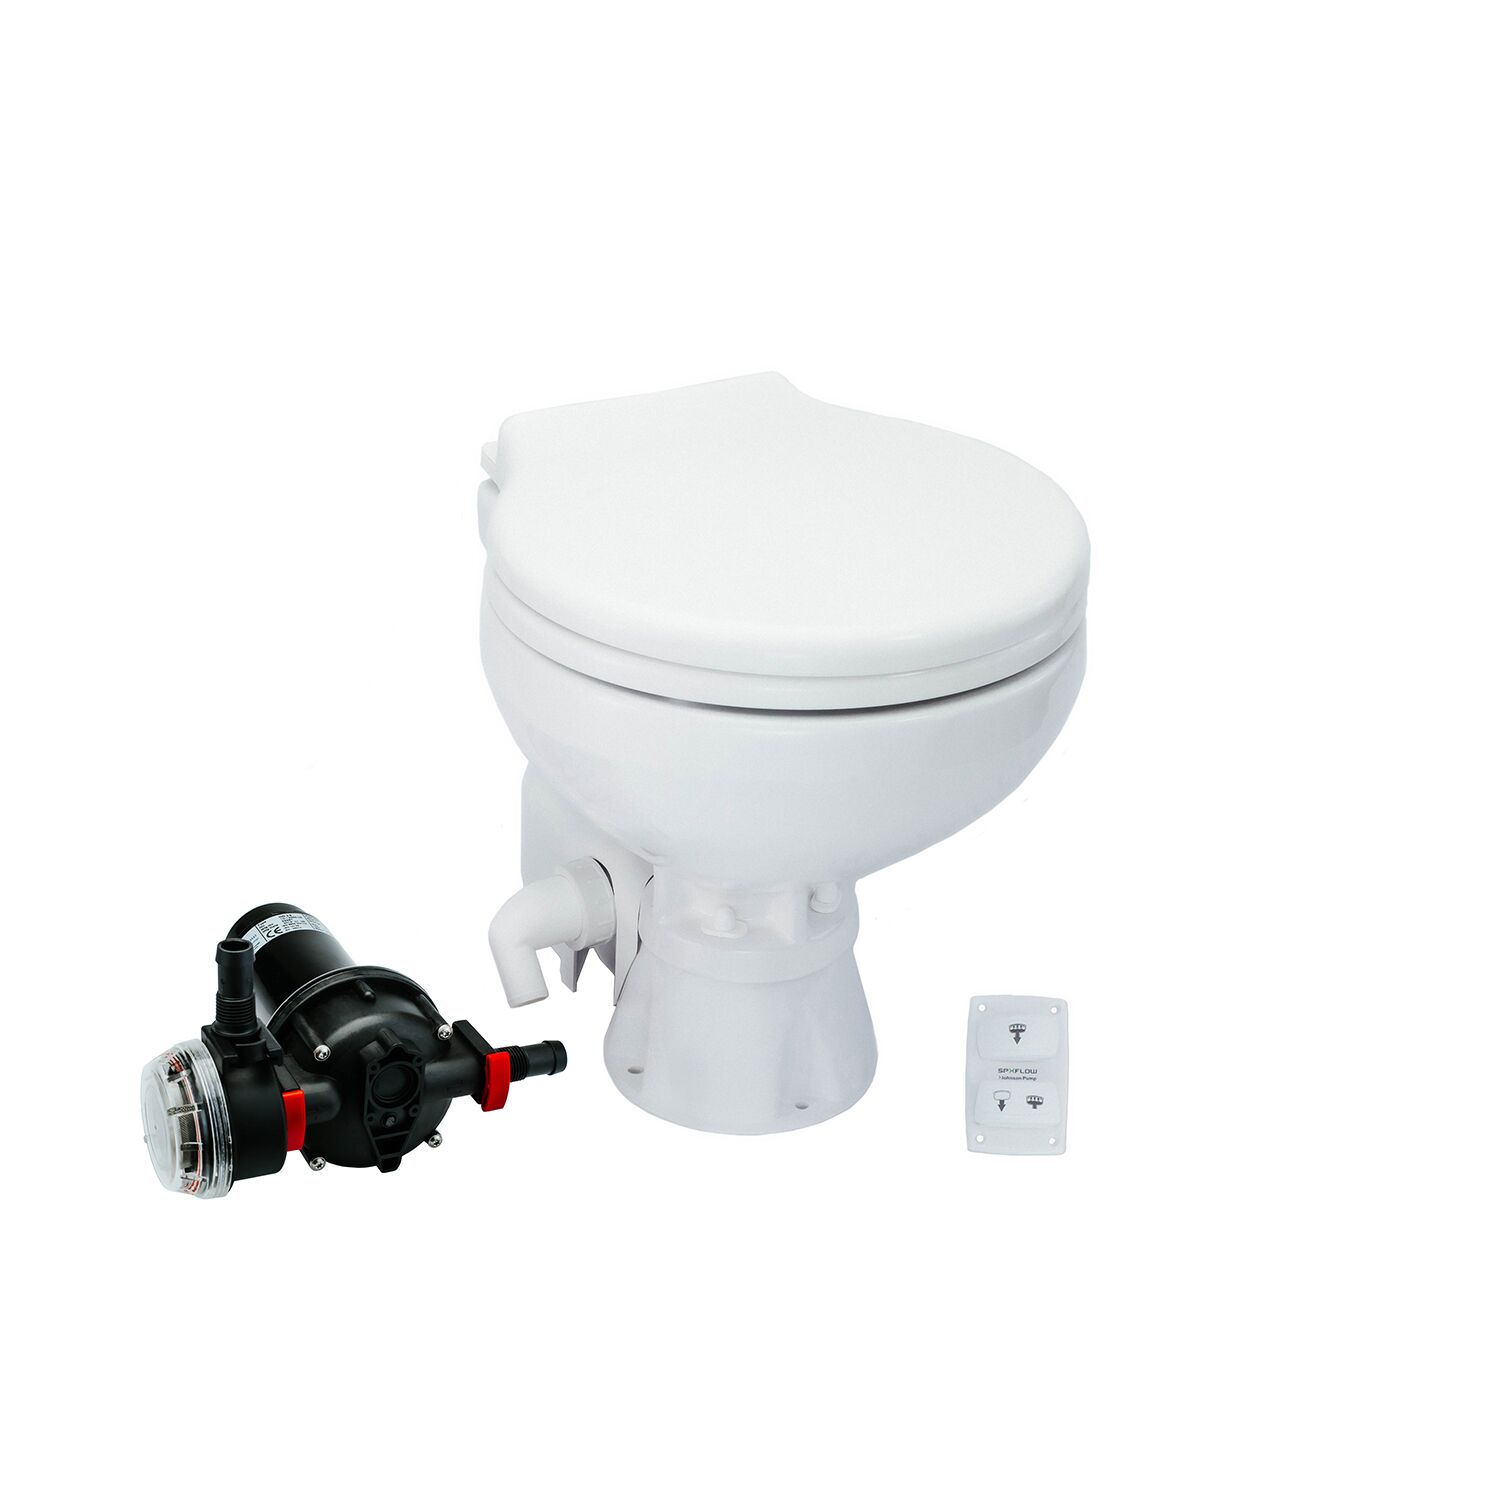 Toalett AquaT Silent Electric Compact,12V